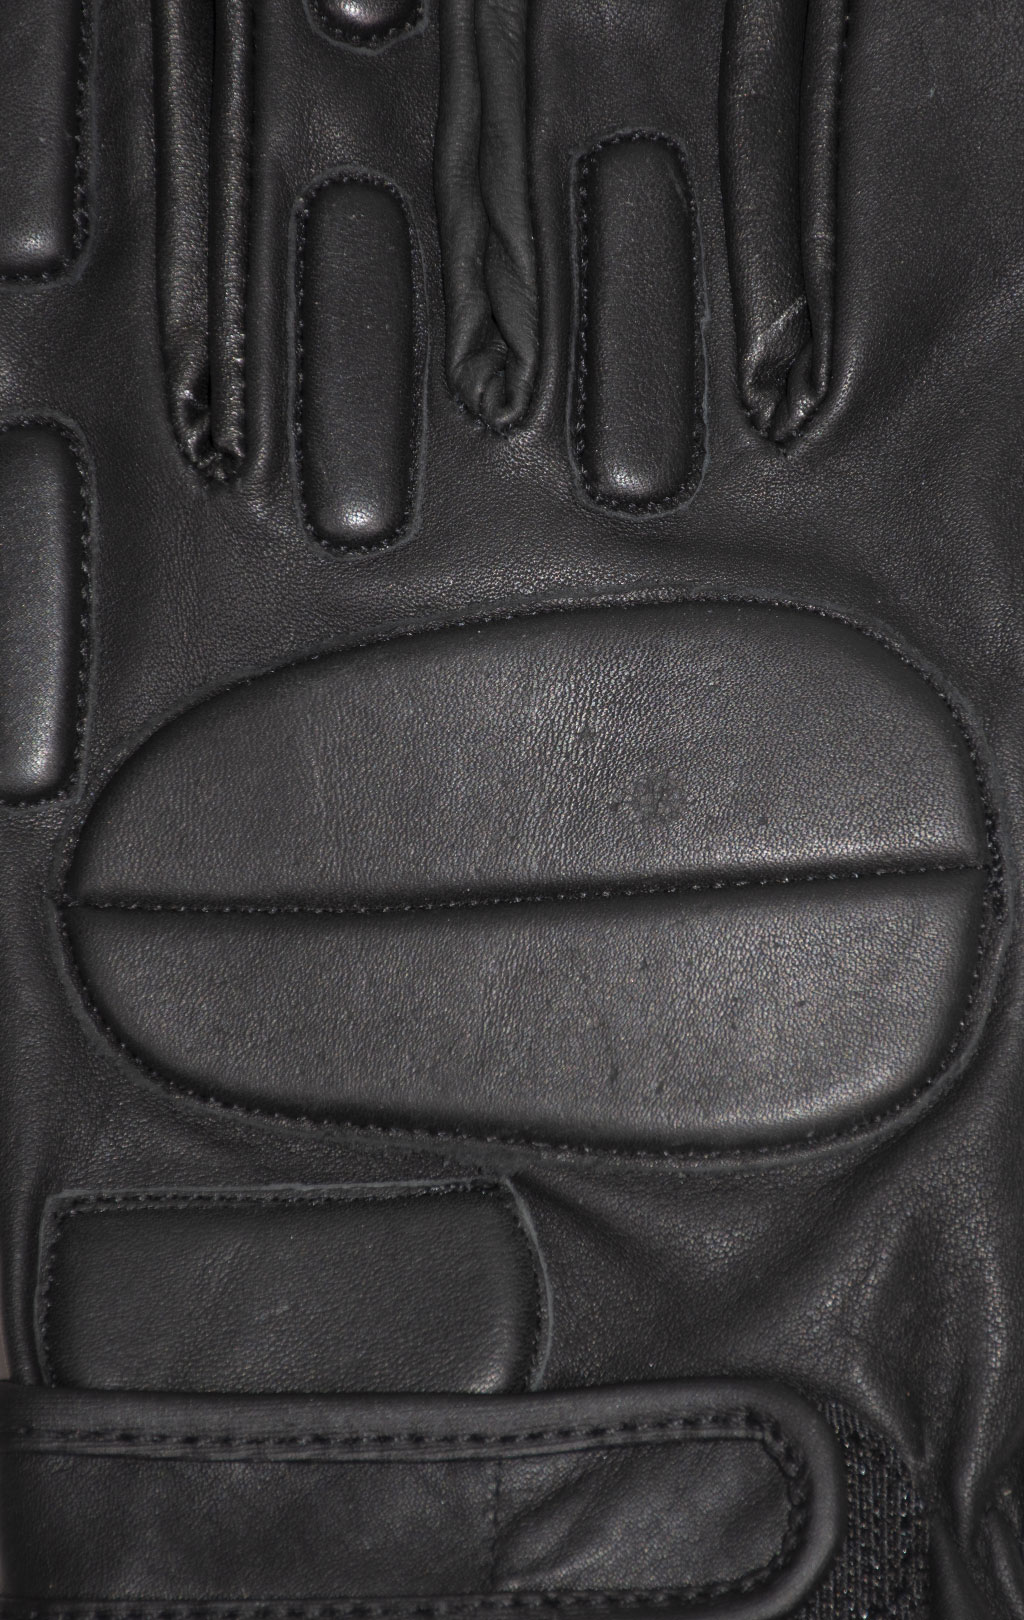 Перчатки McGUIRE кожа black MTX-102 